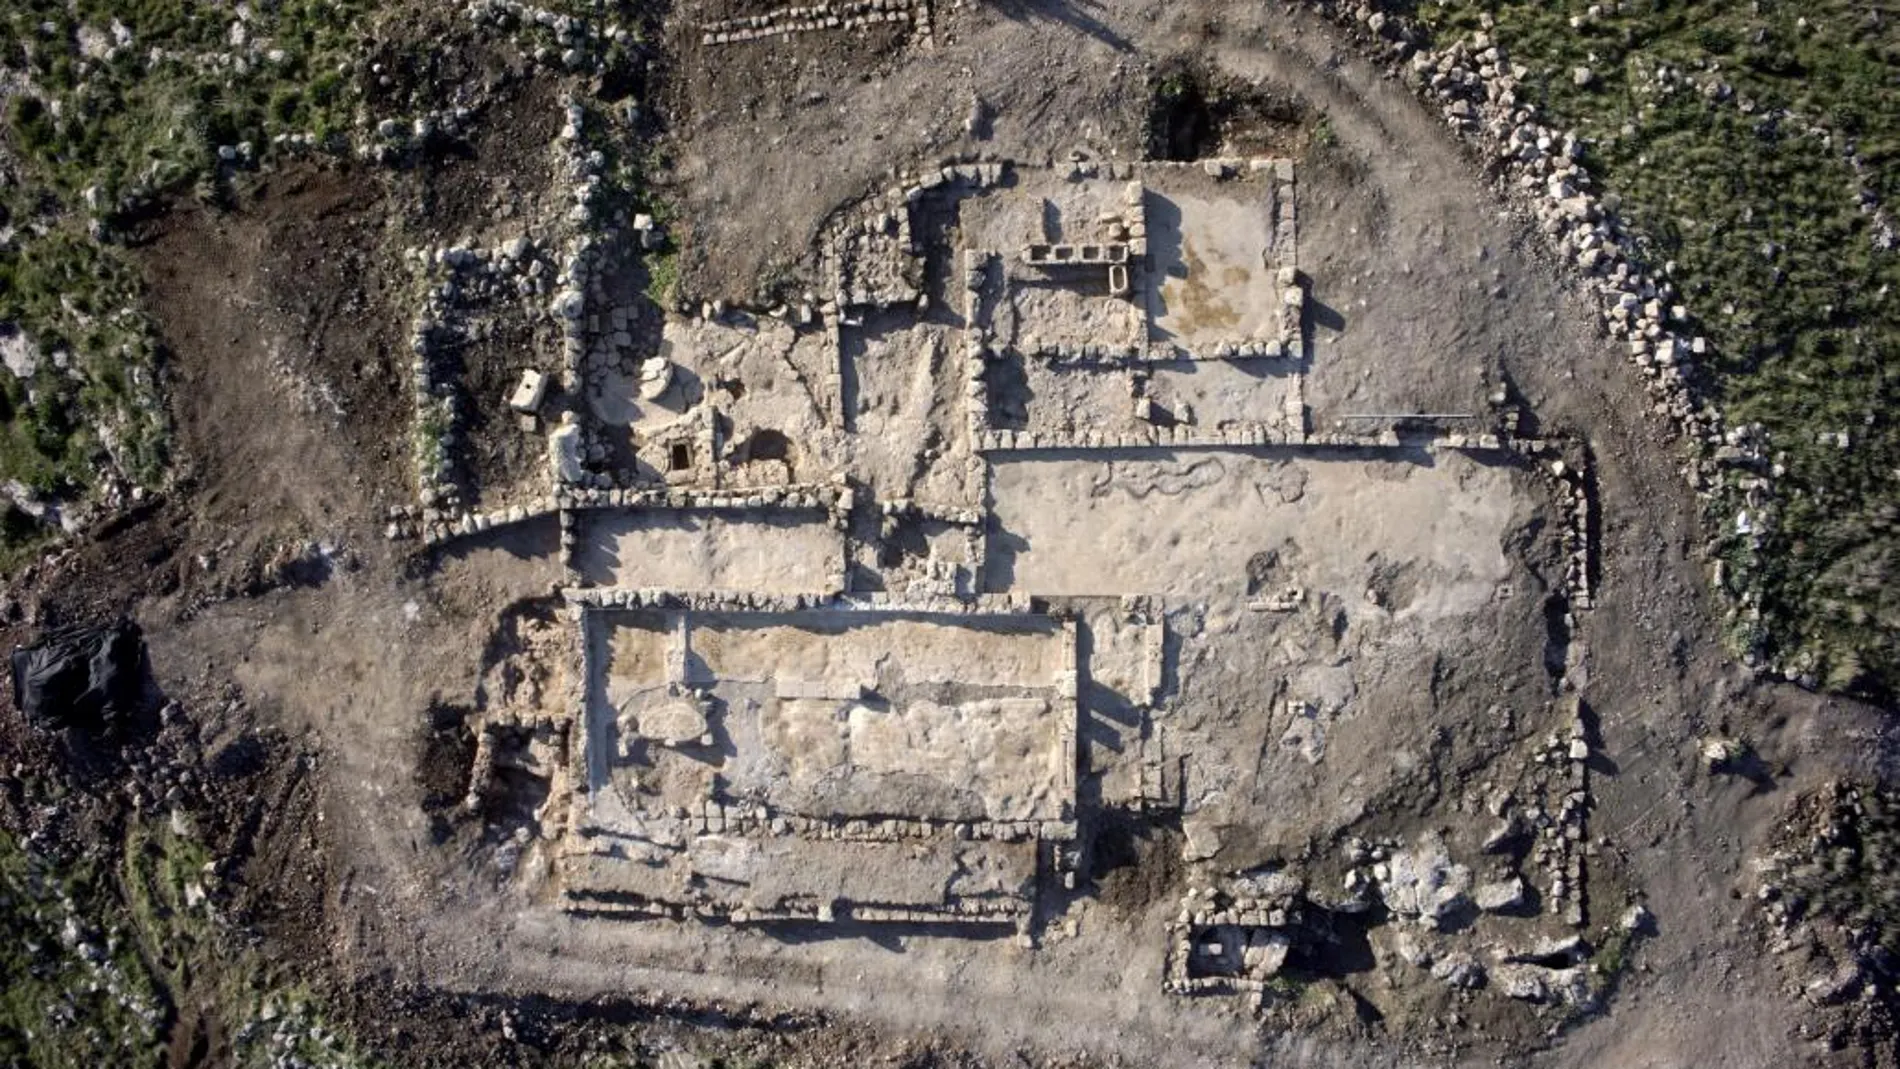 Fotografía facilitada por la Autoridad de Antigüedades de Israel que muestra una vista aérea de la granja de 2.700 años que ha sido hallada por arqueólogos israelíes junto a un monasterio con coloridos mosaicos e inscripciones de 1.500 en la localidad de Rosh Ha-Ayin, en el centro del país.